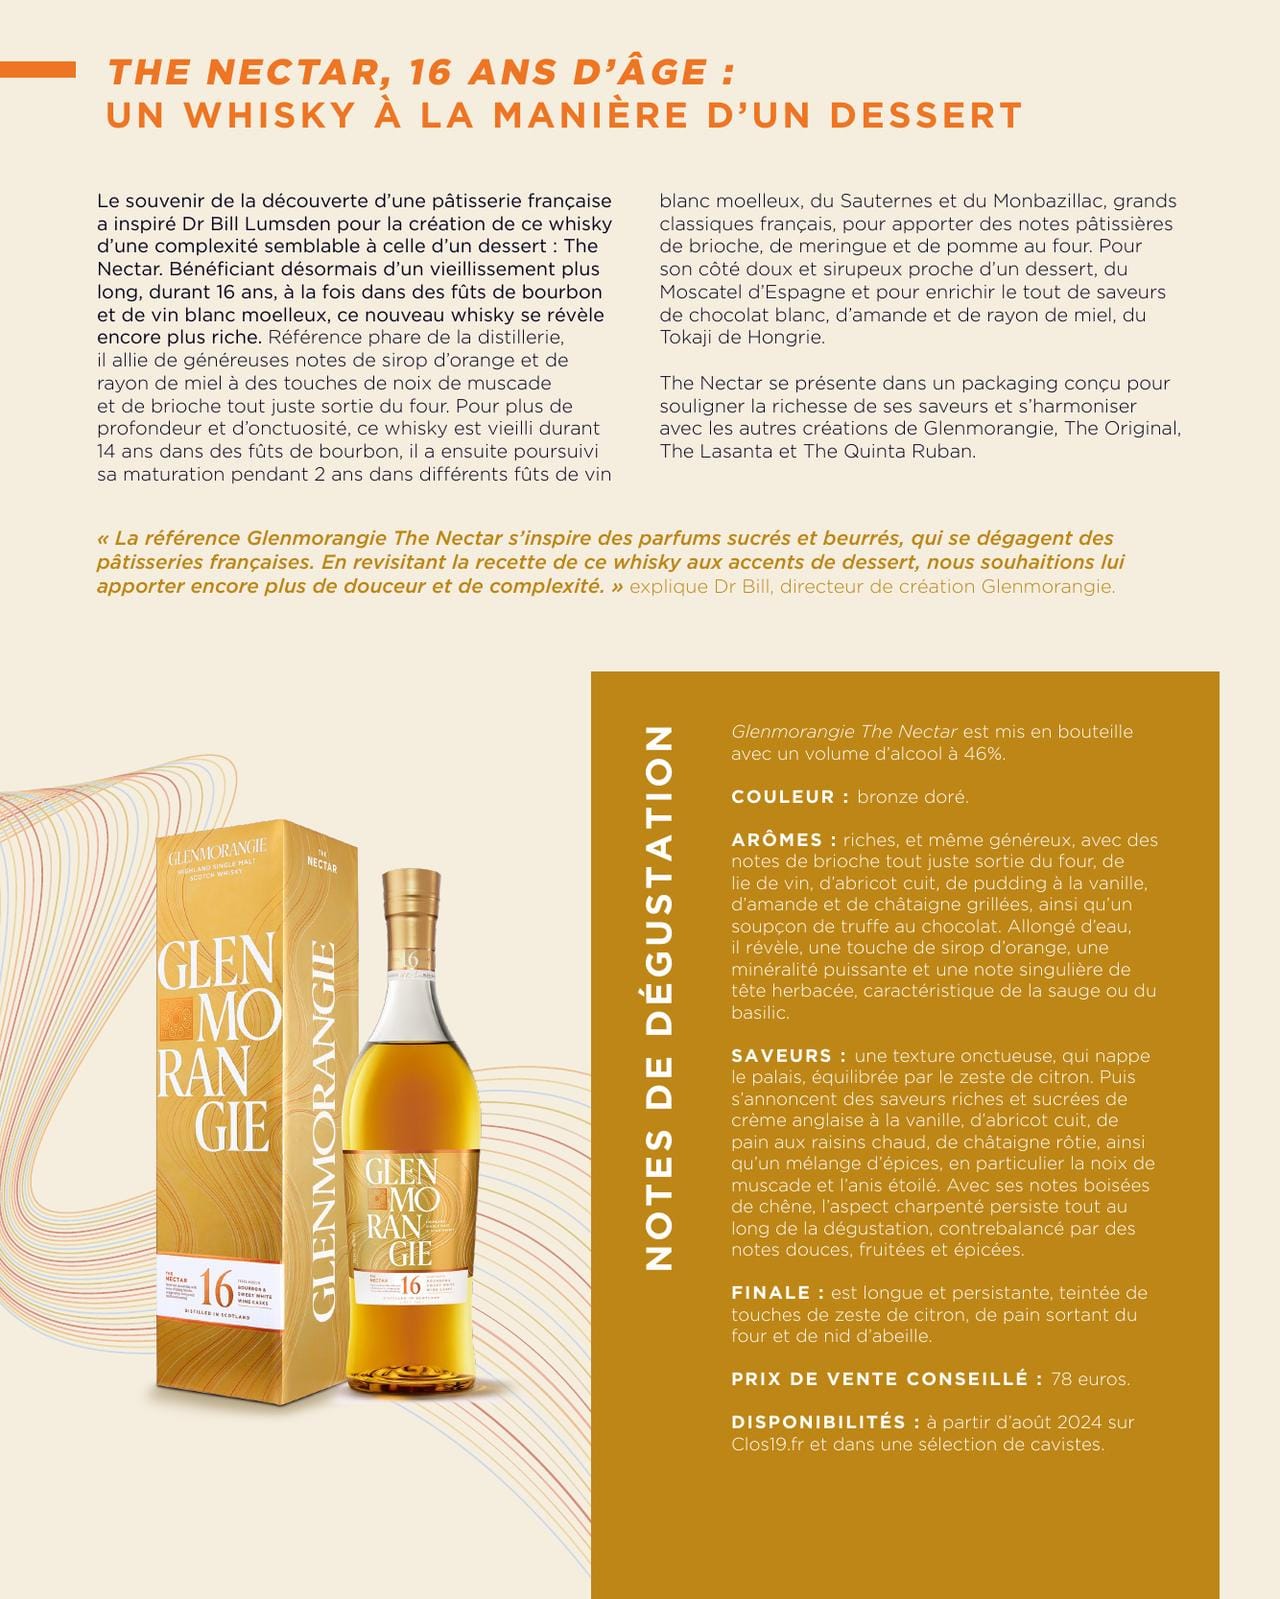 La distillerie Glenmorangie réinvente son 18 ans d’âge et dévoile la nouvelle version de The Nectar